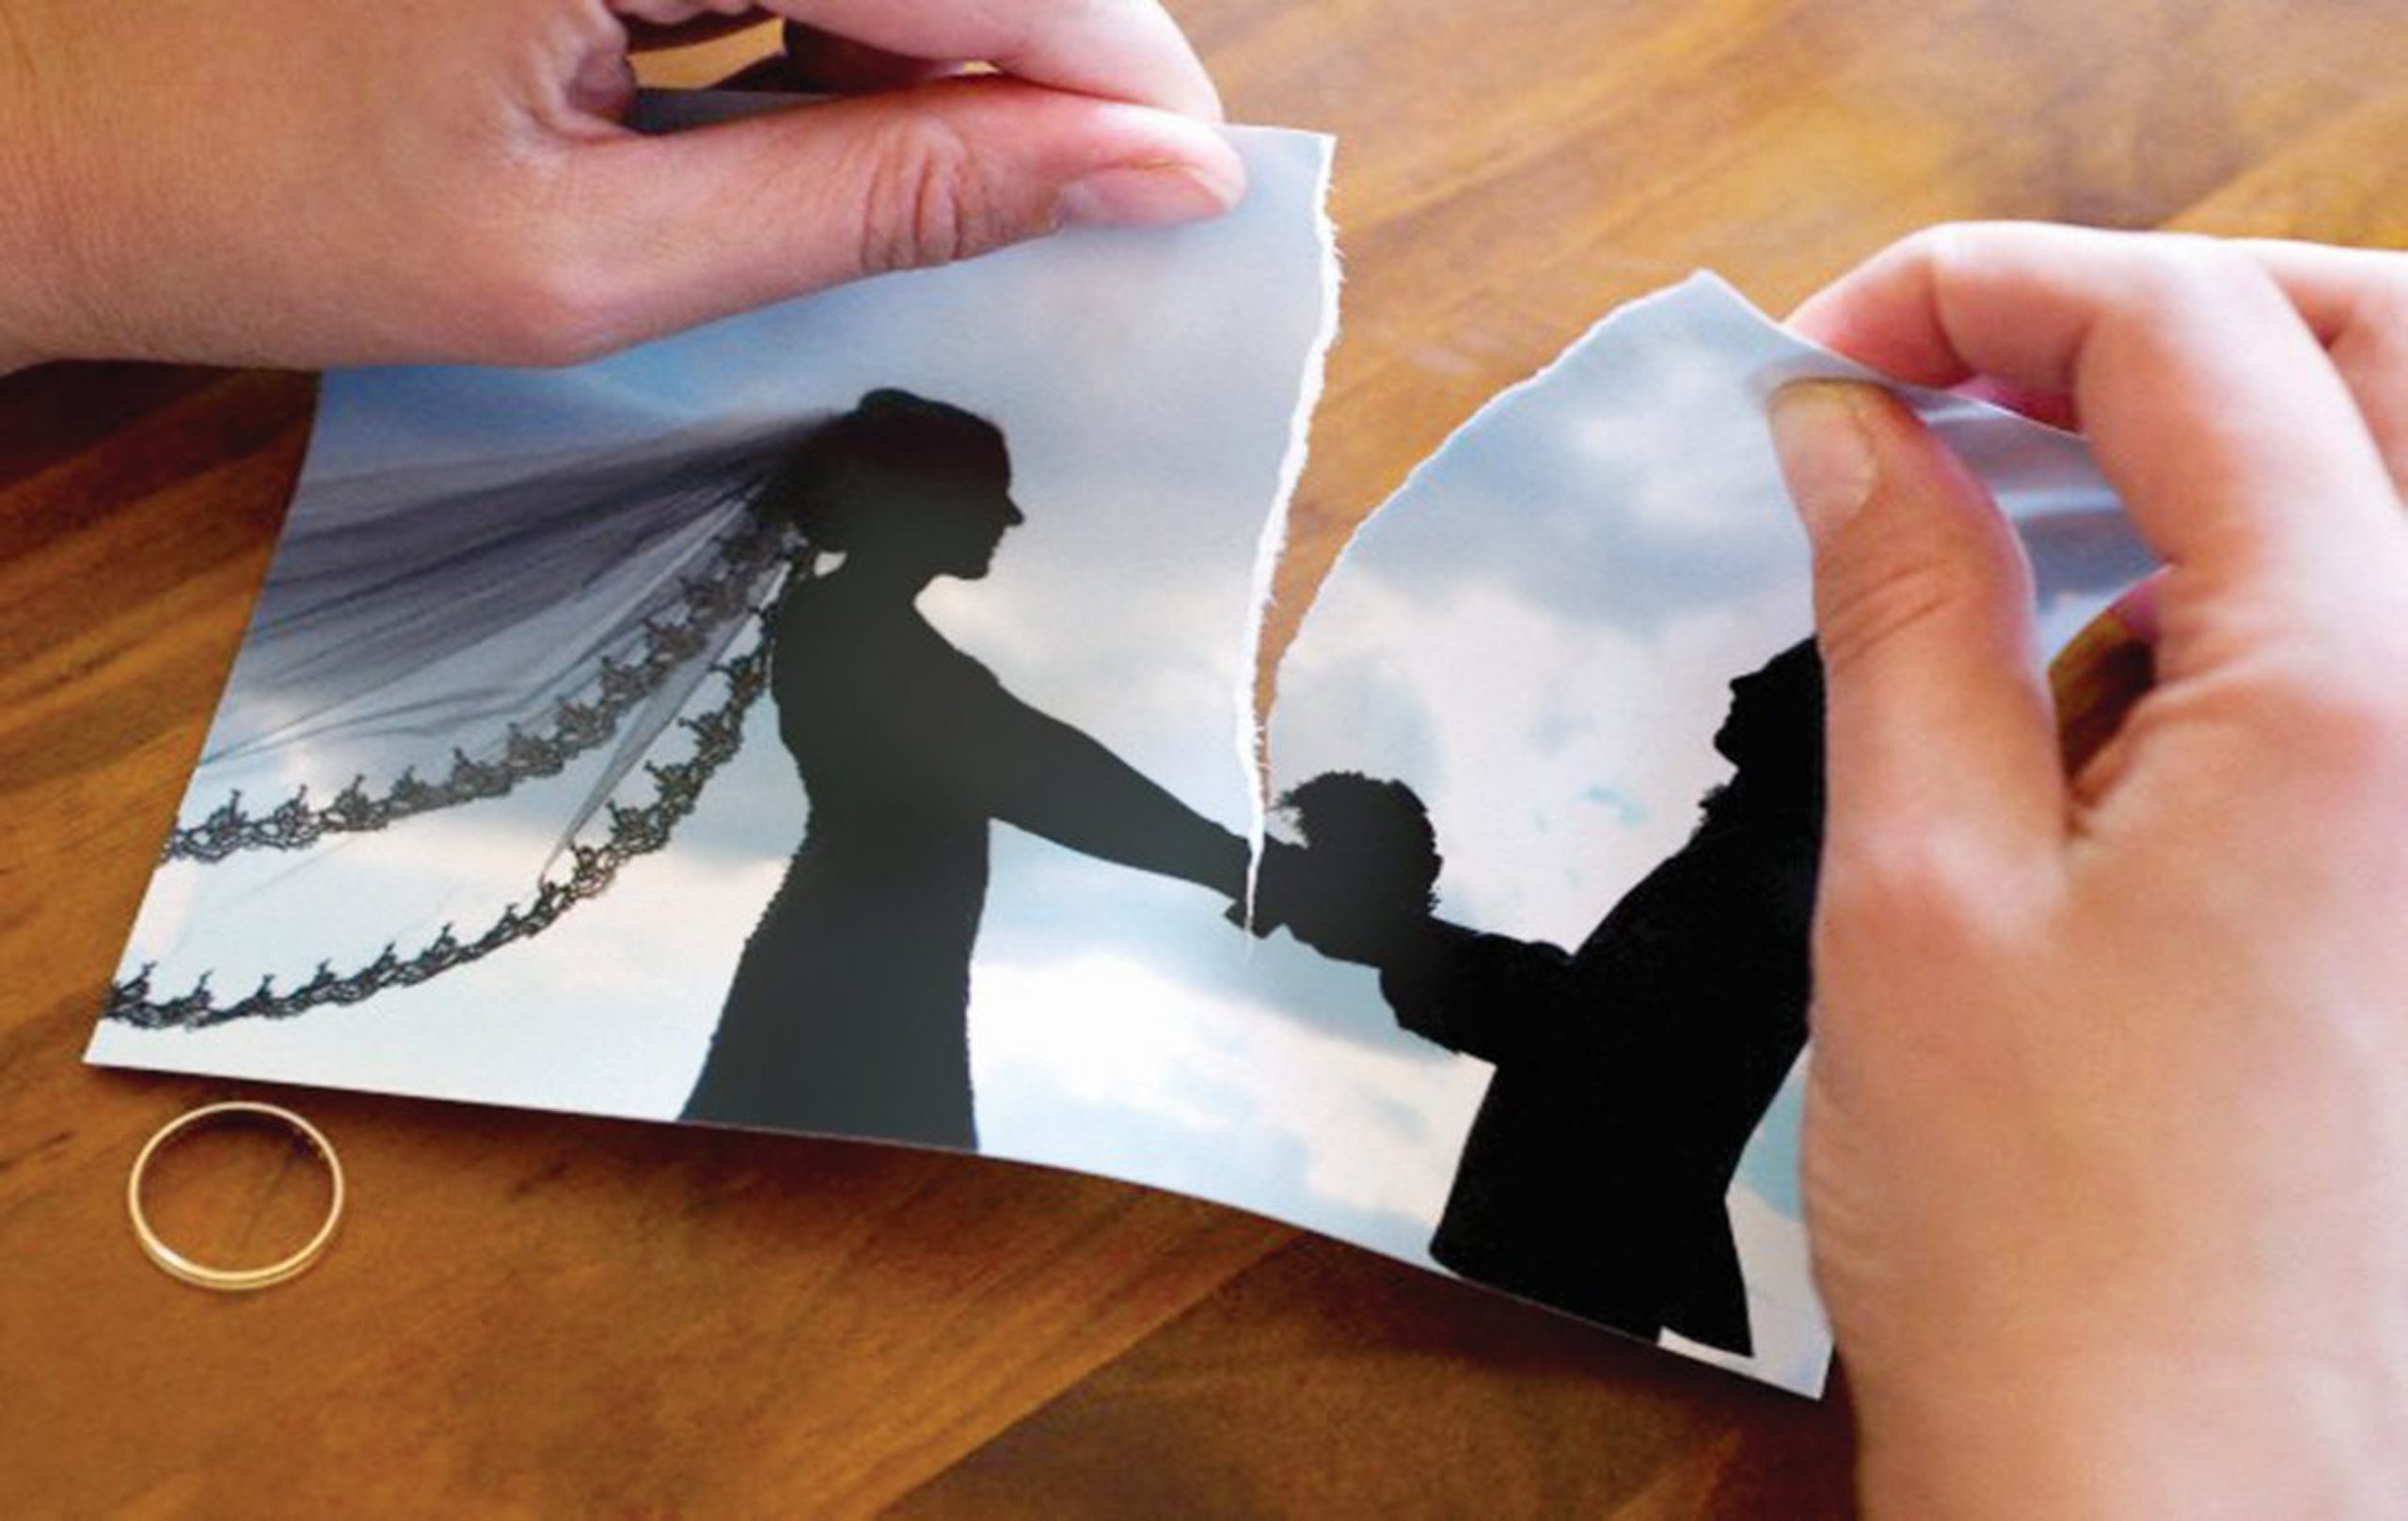 مبارزه با افسردگی بعد از طلاق با هفت راهکار مؤثر